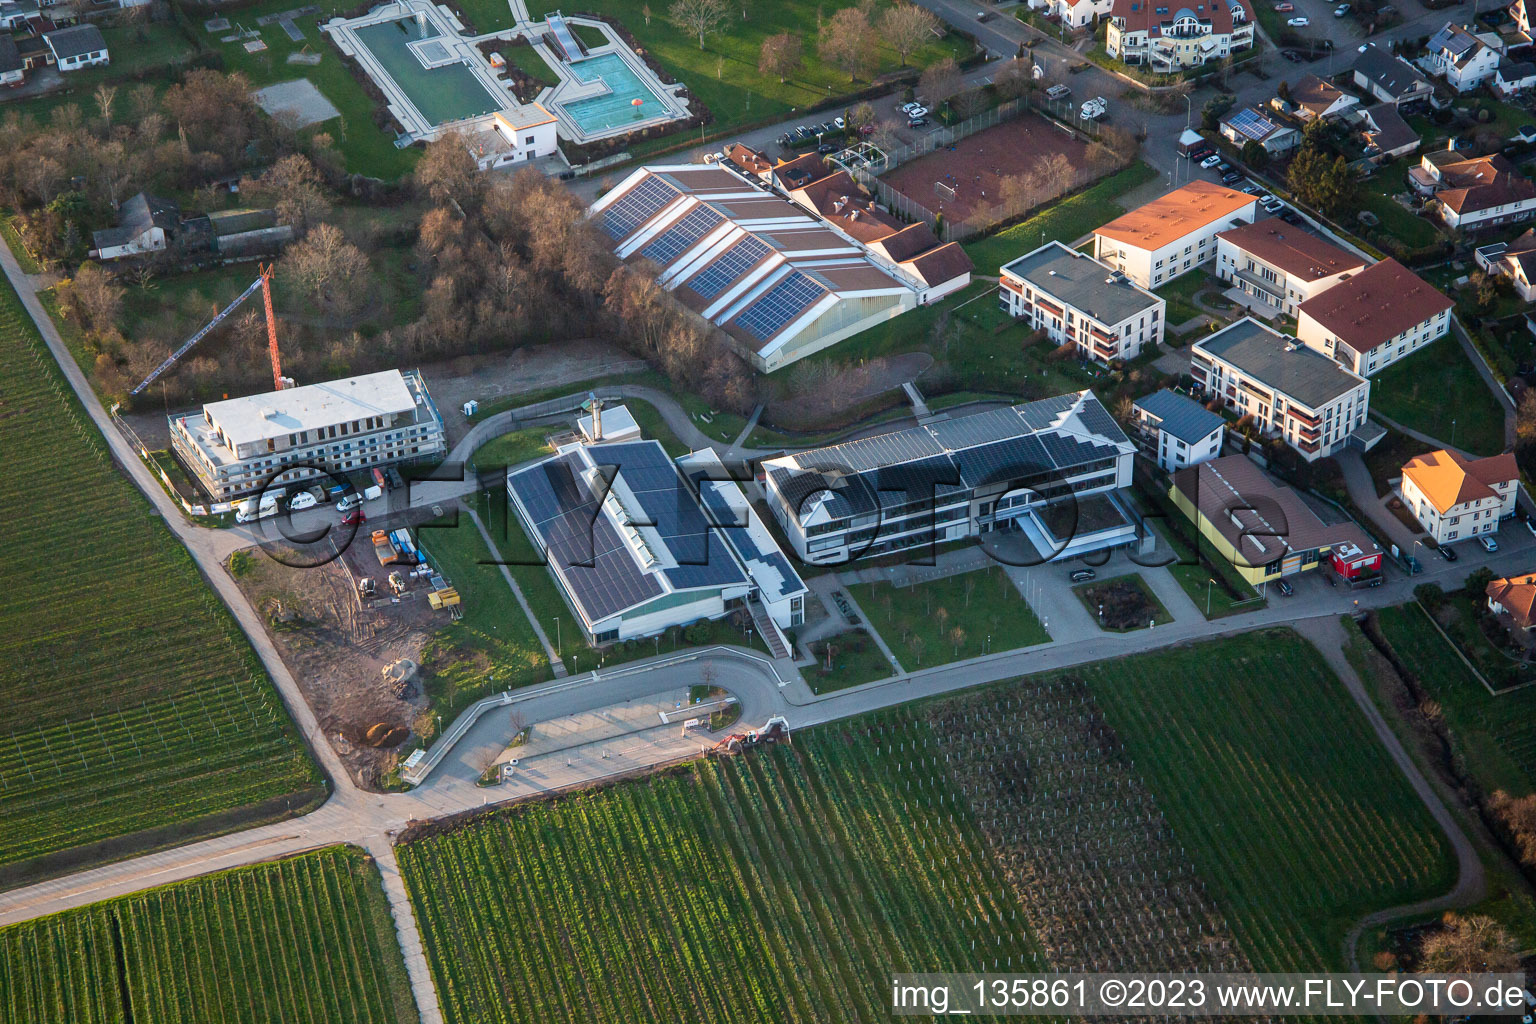 Gebrüder-Ullrich-Realschule plus vor dem Freibad / Schwimmbad Kalmitbad in Maikammer im Bundesland Rheinland-Pfalz, Deutschland